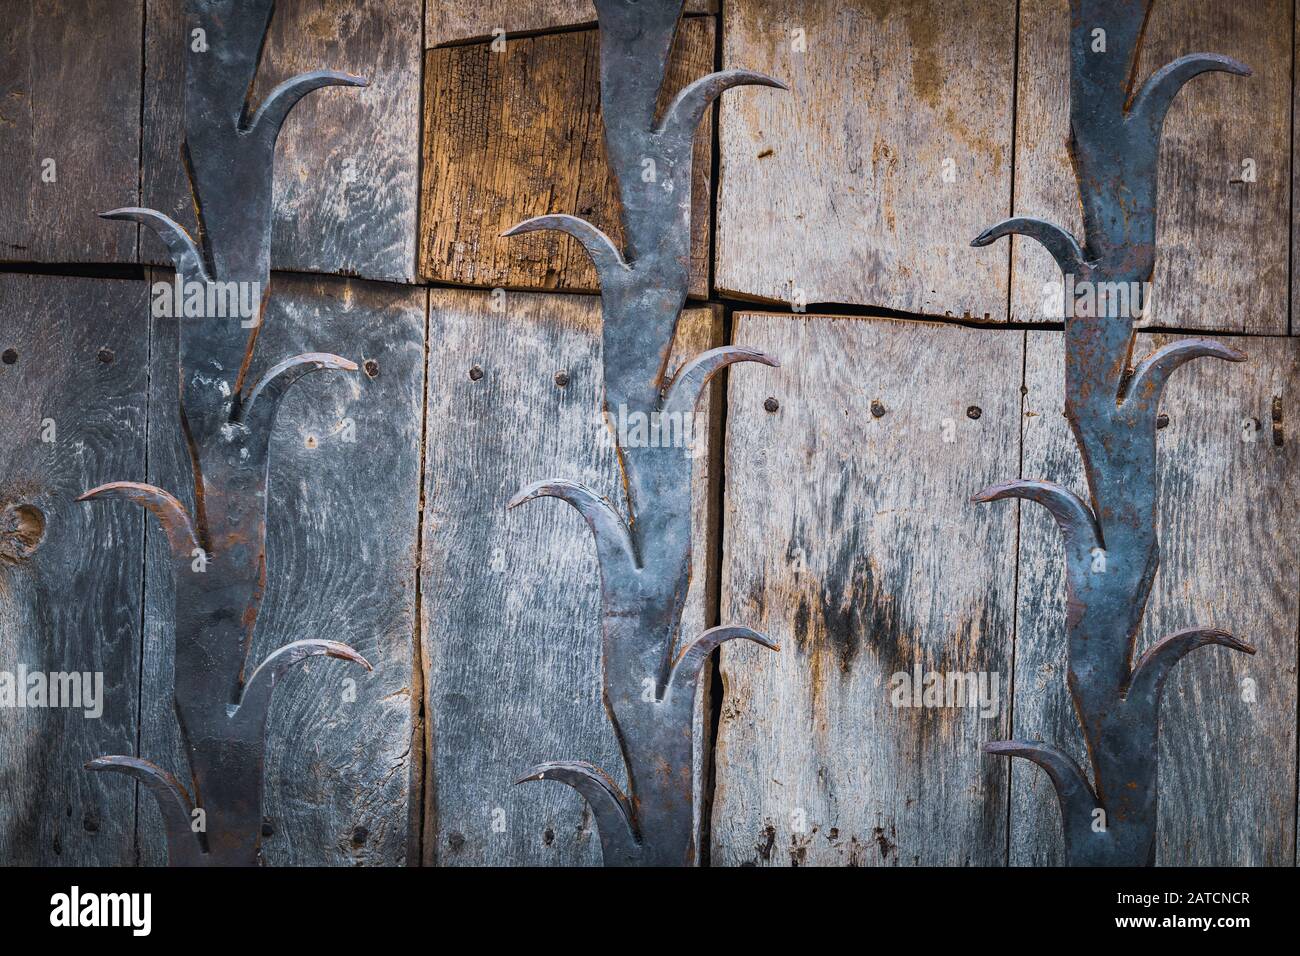 Detalle de una antigua puerta de madera con barras decorativas de hierro fundido Foto de stock